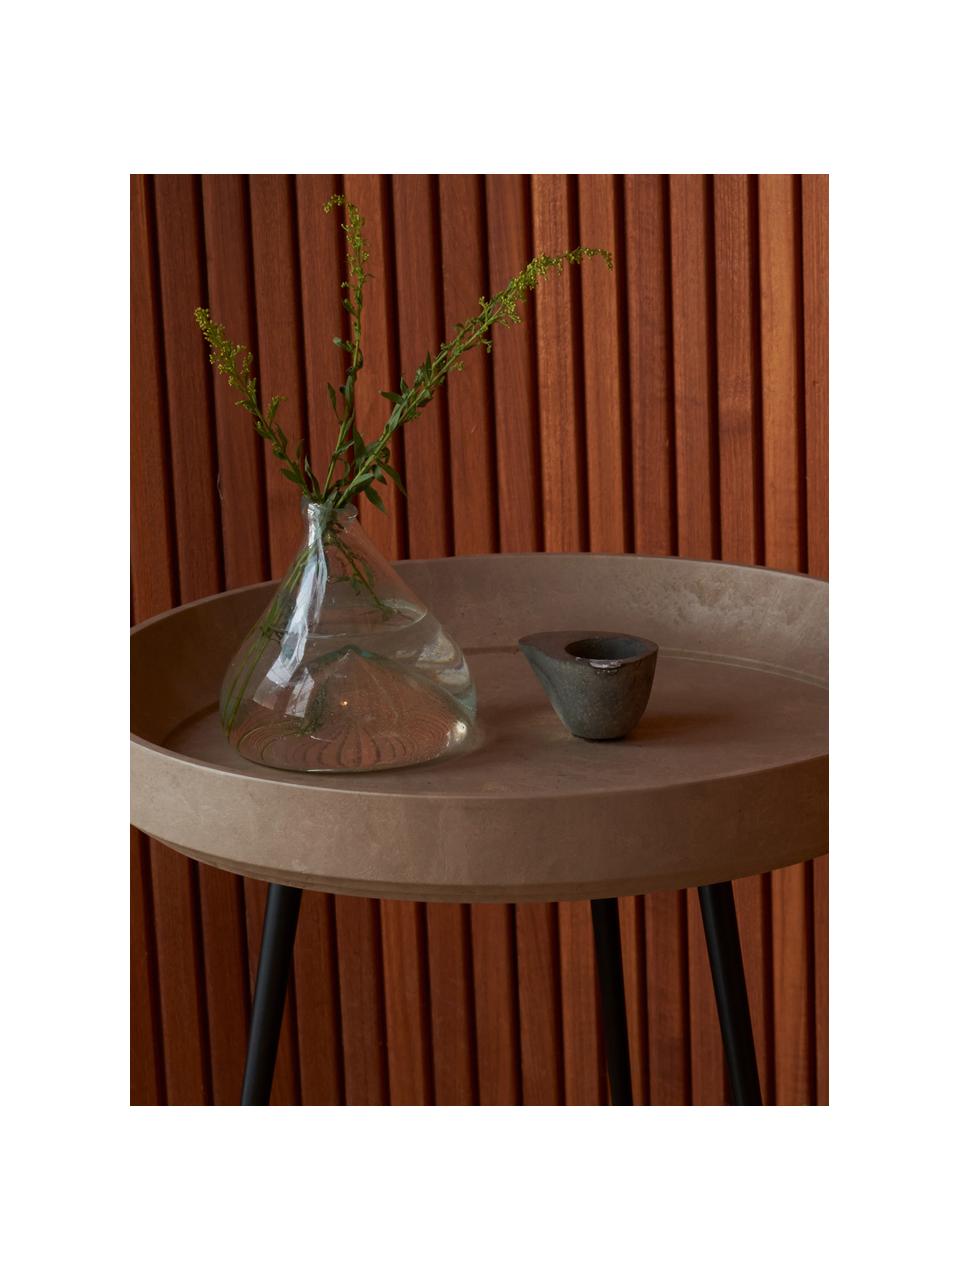 Kulatý odkládací stolek z dubového dřeva Bowl, ručně vyrobený, Dubové dřevo, béžově lakované, Ø 46 cm, V 55 cm